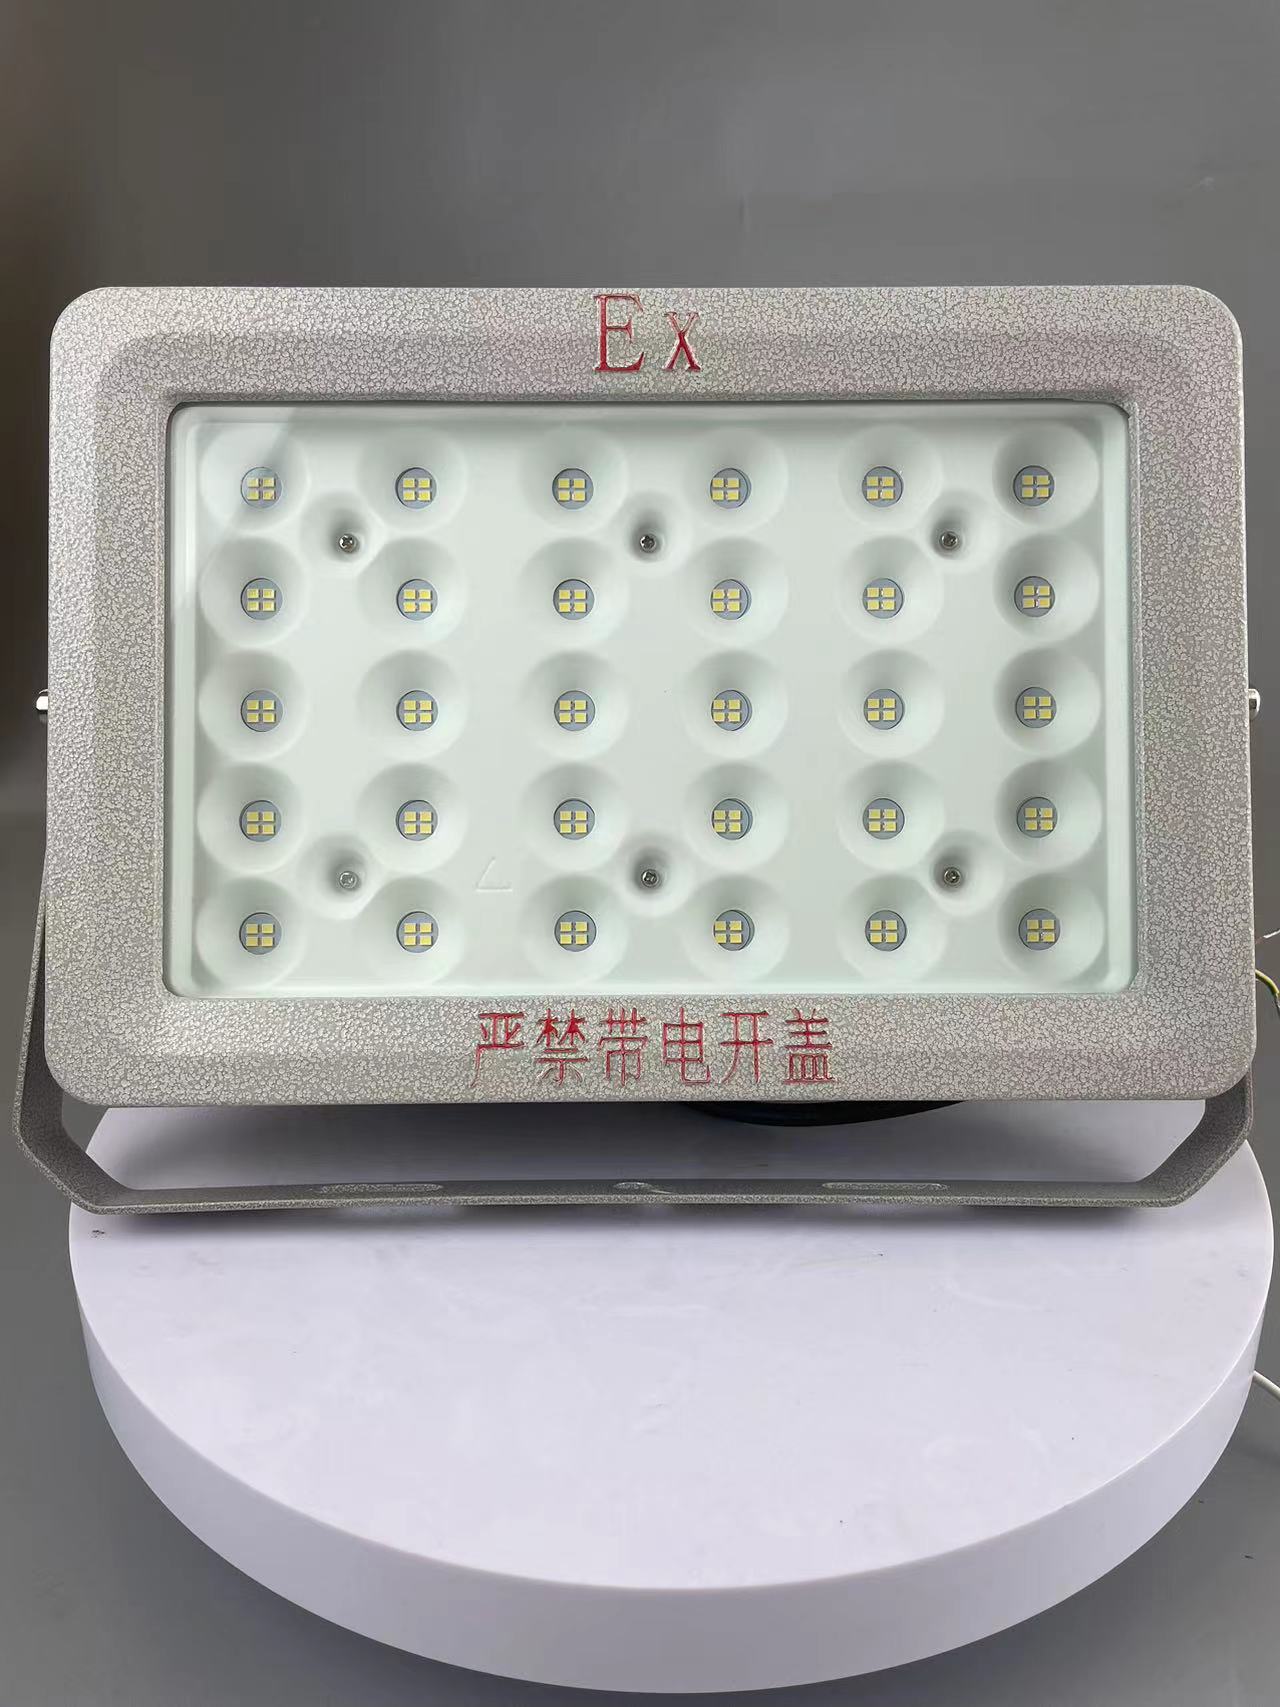 HRD57-III型LED节能灯华荣免维护系列防爆节能灯进口大功率LED光源图片